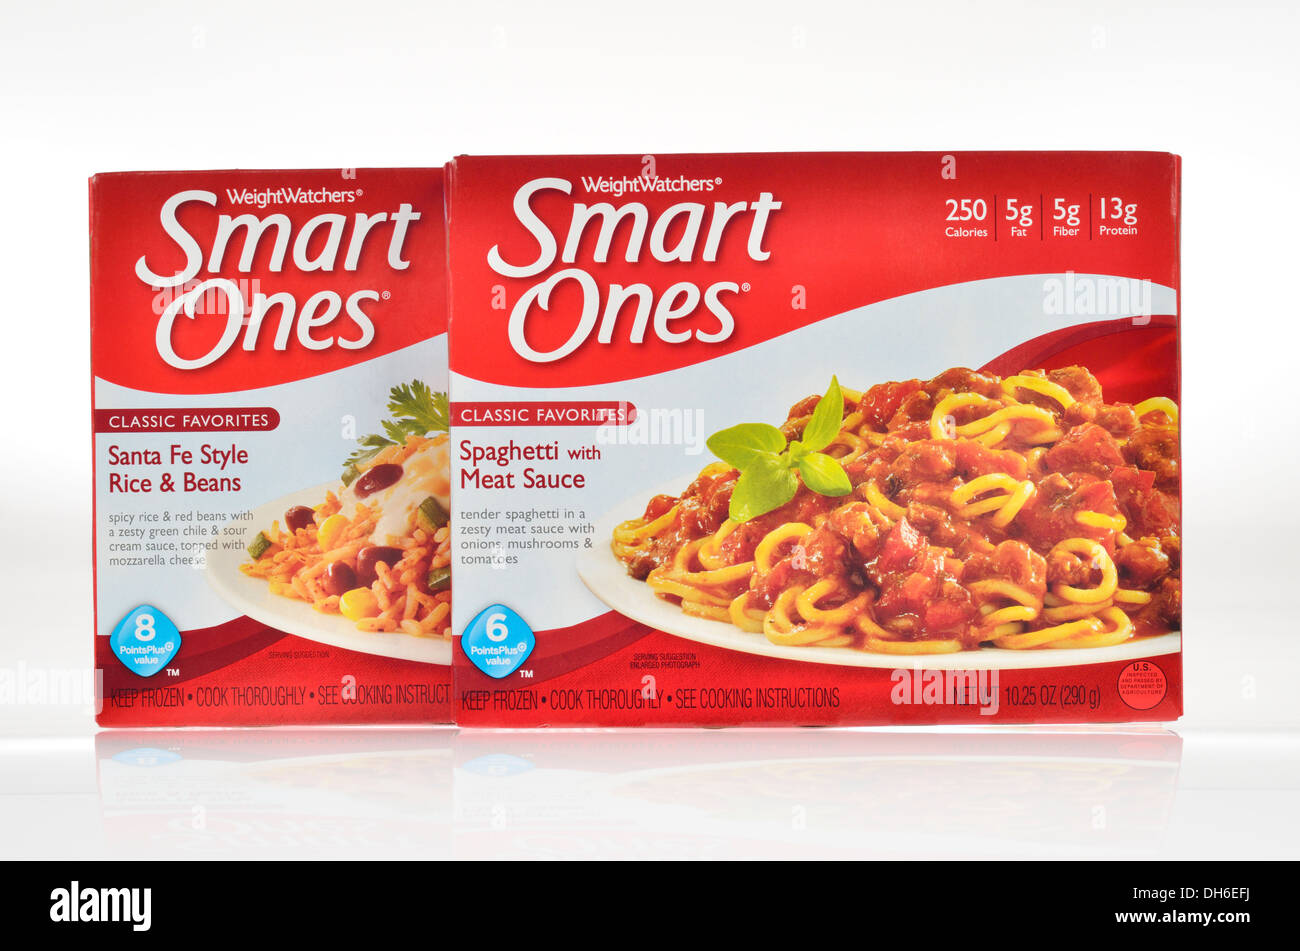 Les boîtes non ouvertes de Weight Watchers Smart Onesmd repas surgelés sur fond blanc, découpe. USA Banque D'Images